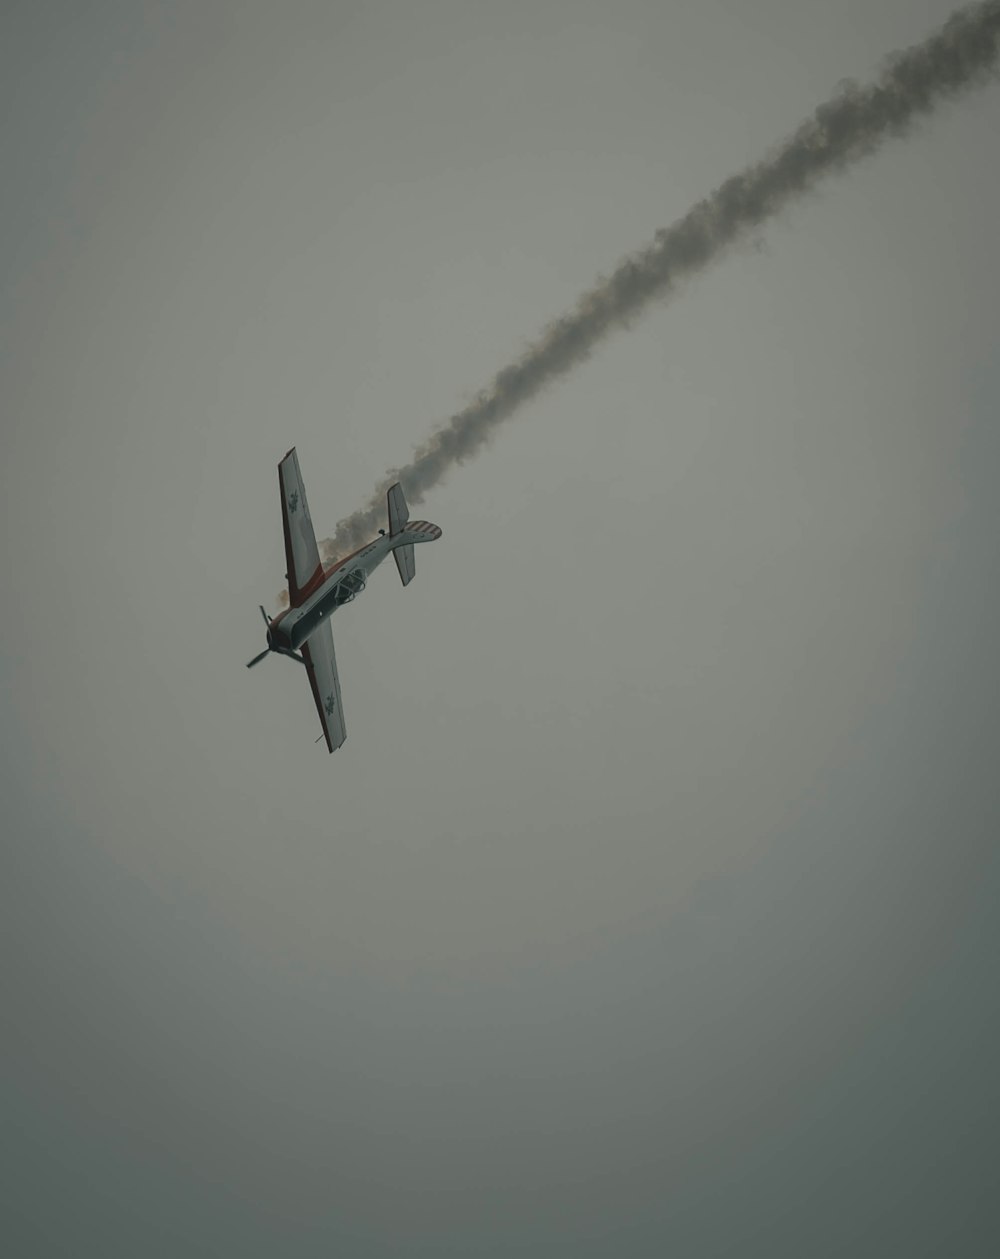 photography of crashing biplane during daytime